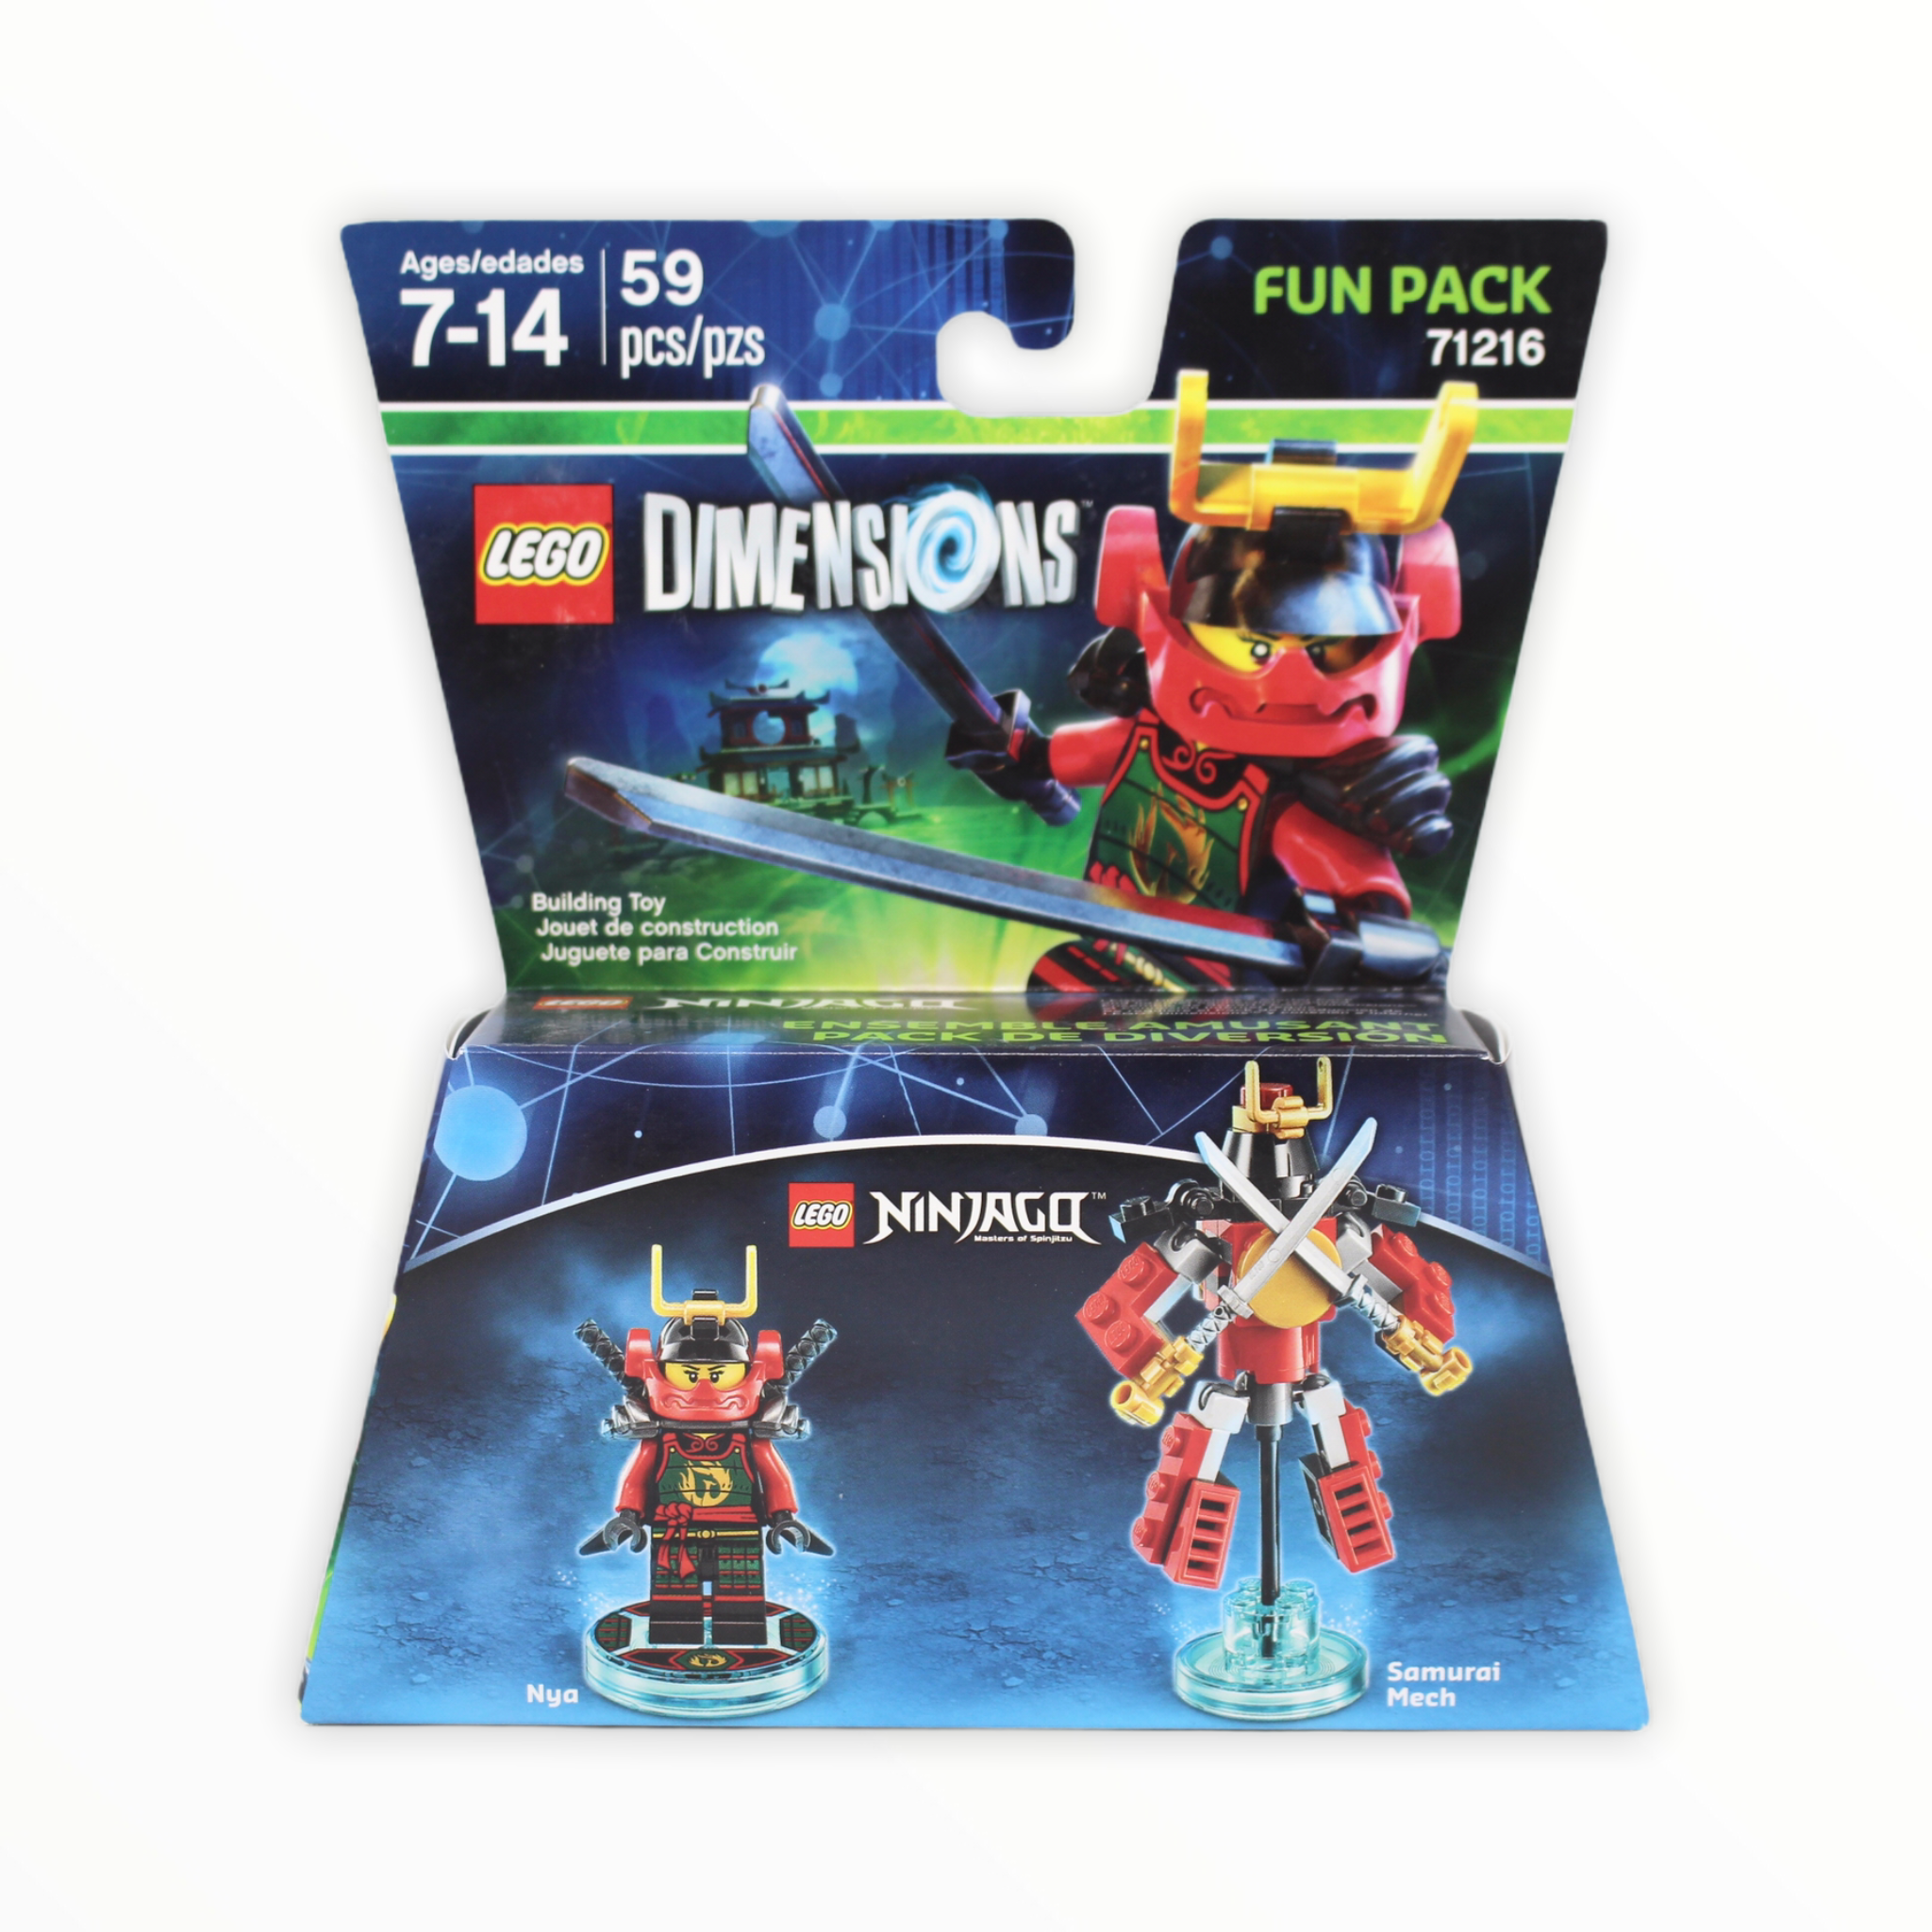 Retired Set 71216 Dimensions Fun Pack - Ninjago Nya and Samurai Mech